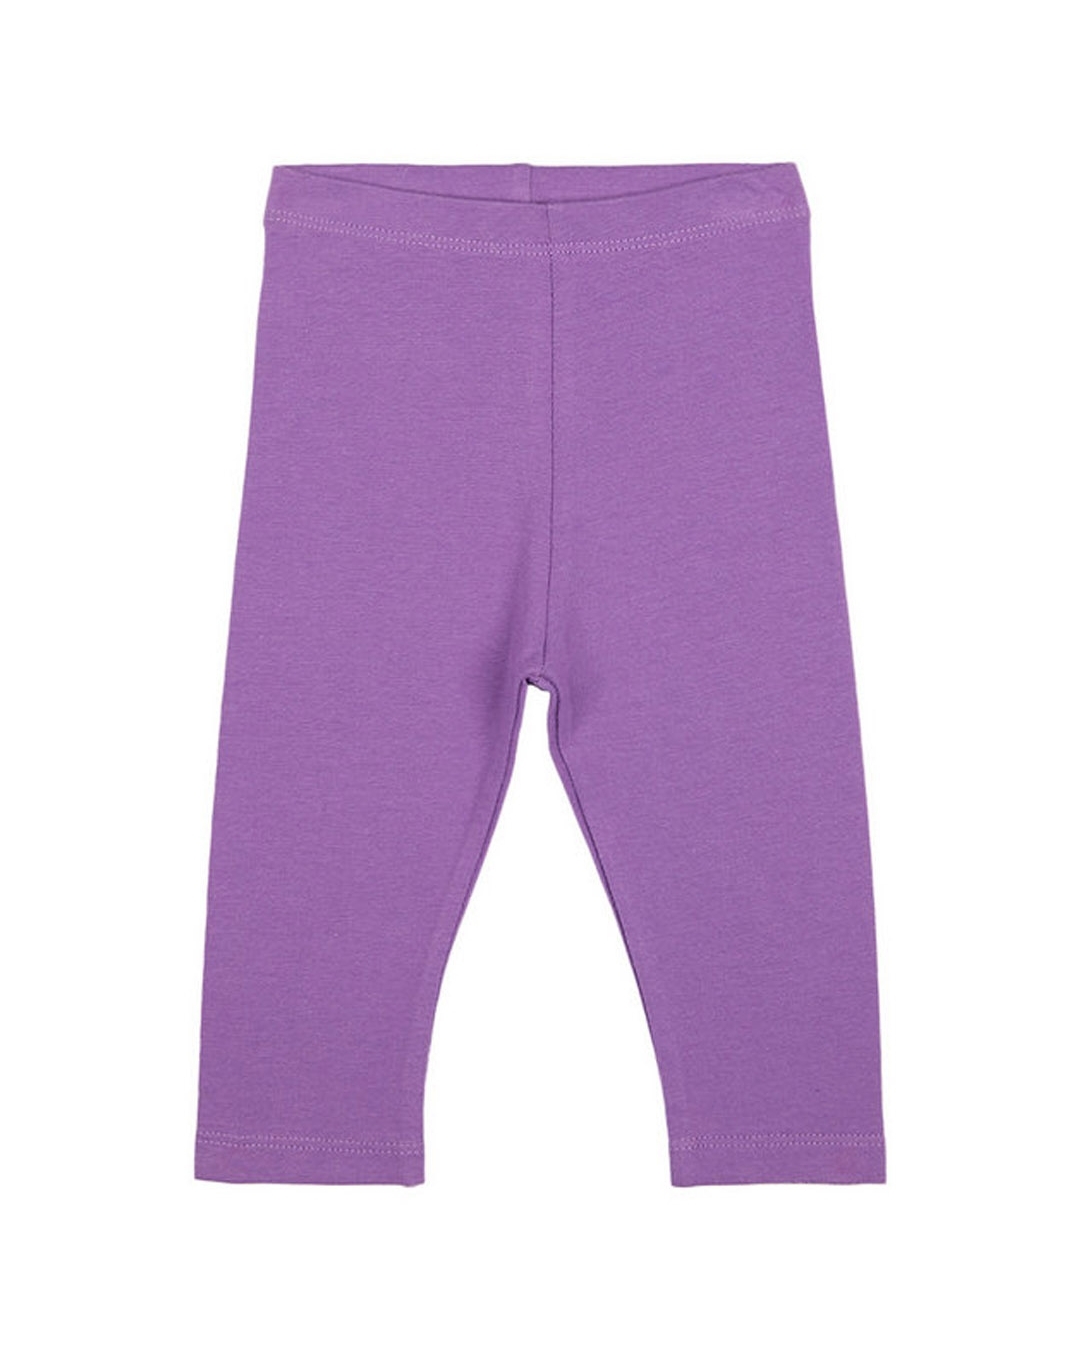 Buy Girls Leggings- Purple Online at Best Price